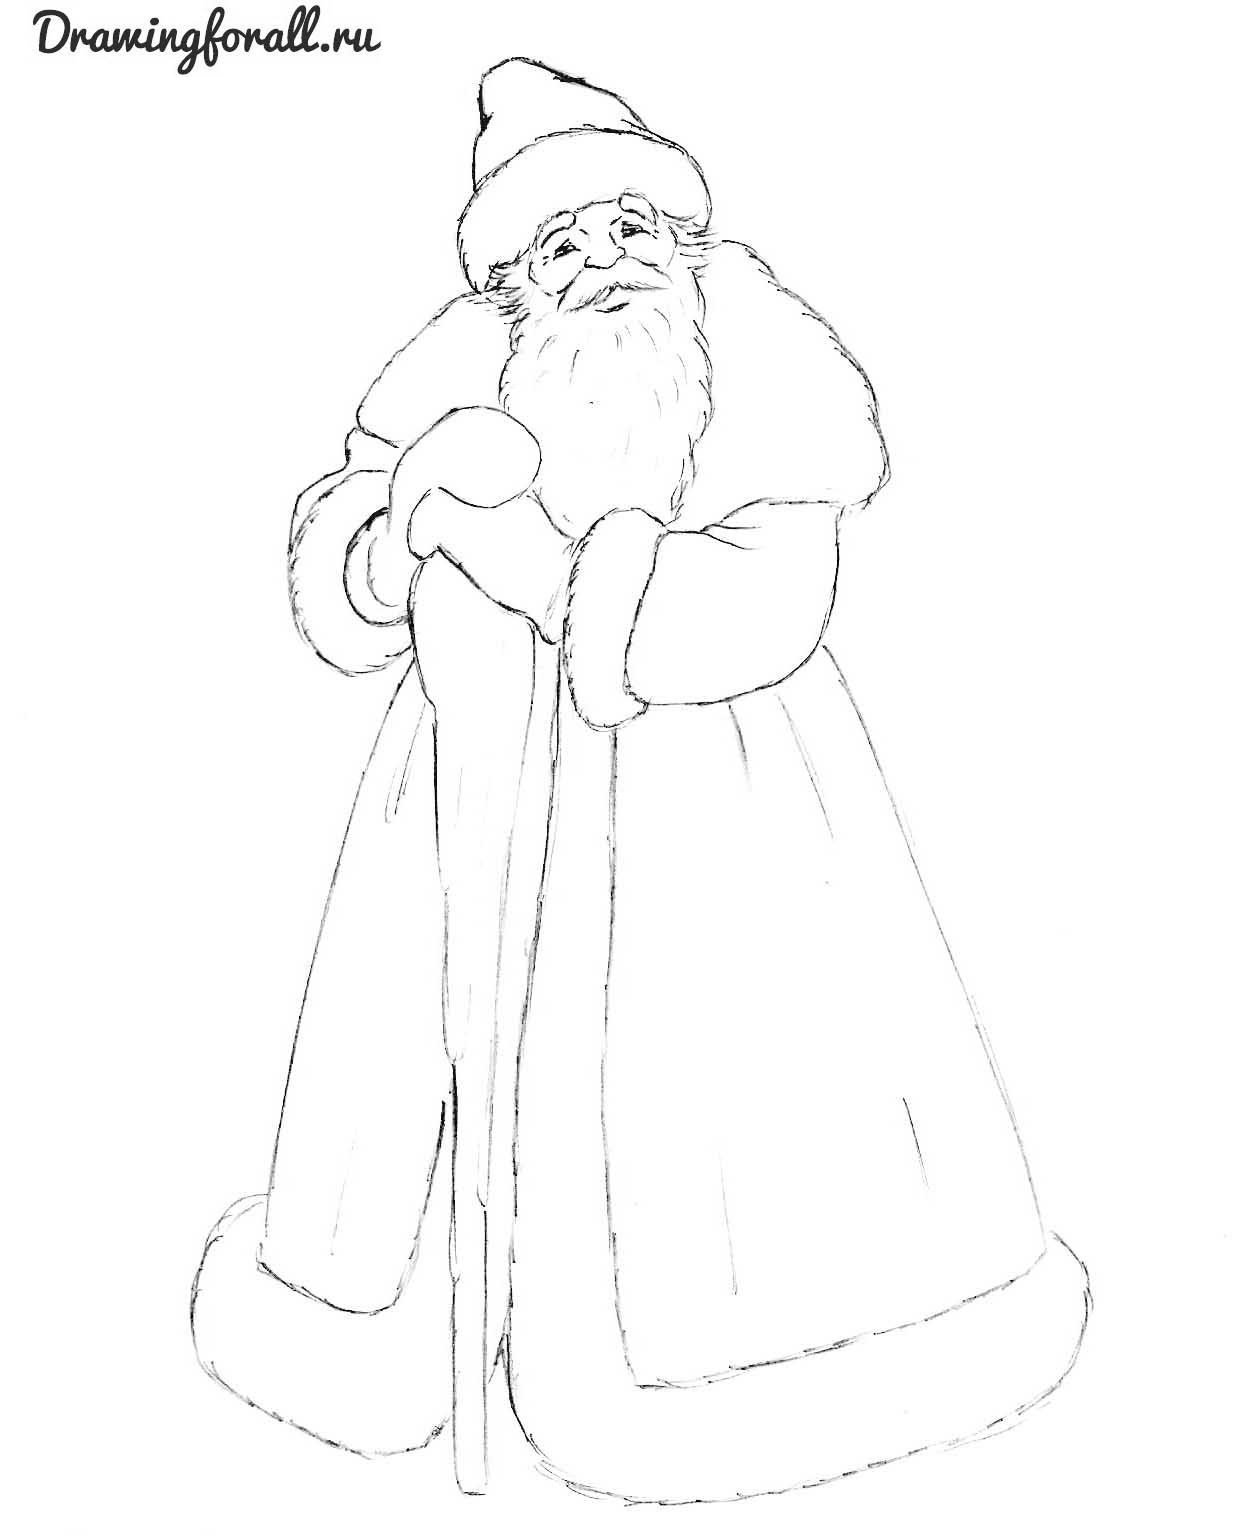 Дед мороз и Снегурочка рисунок карандашом на Новый год 2019